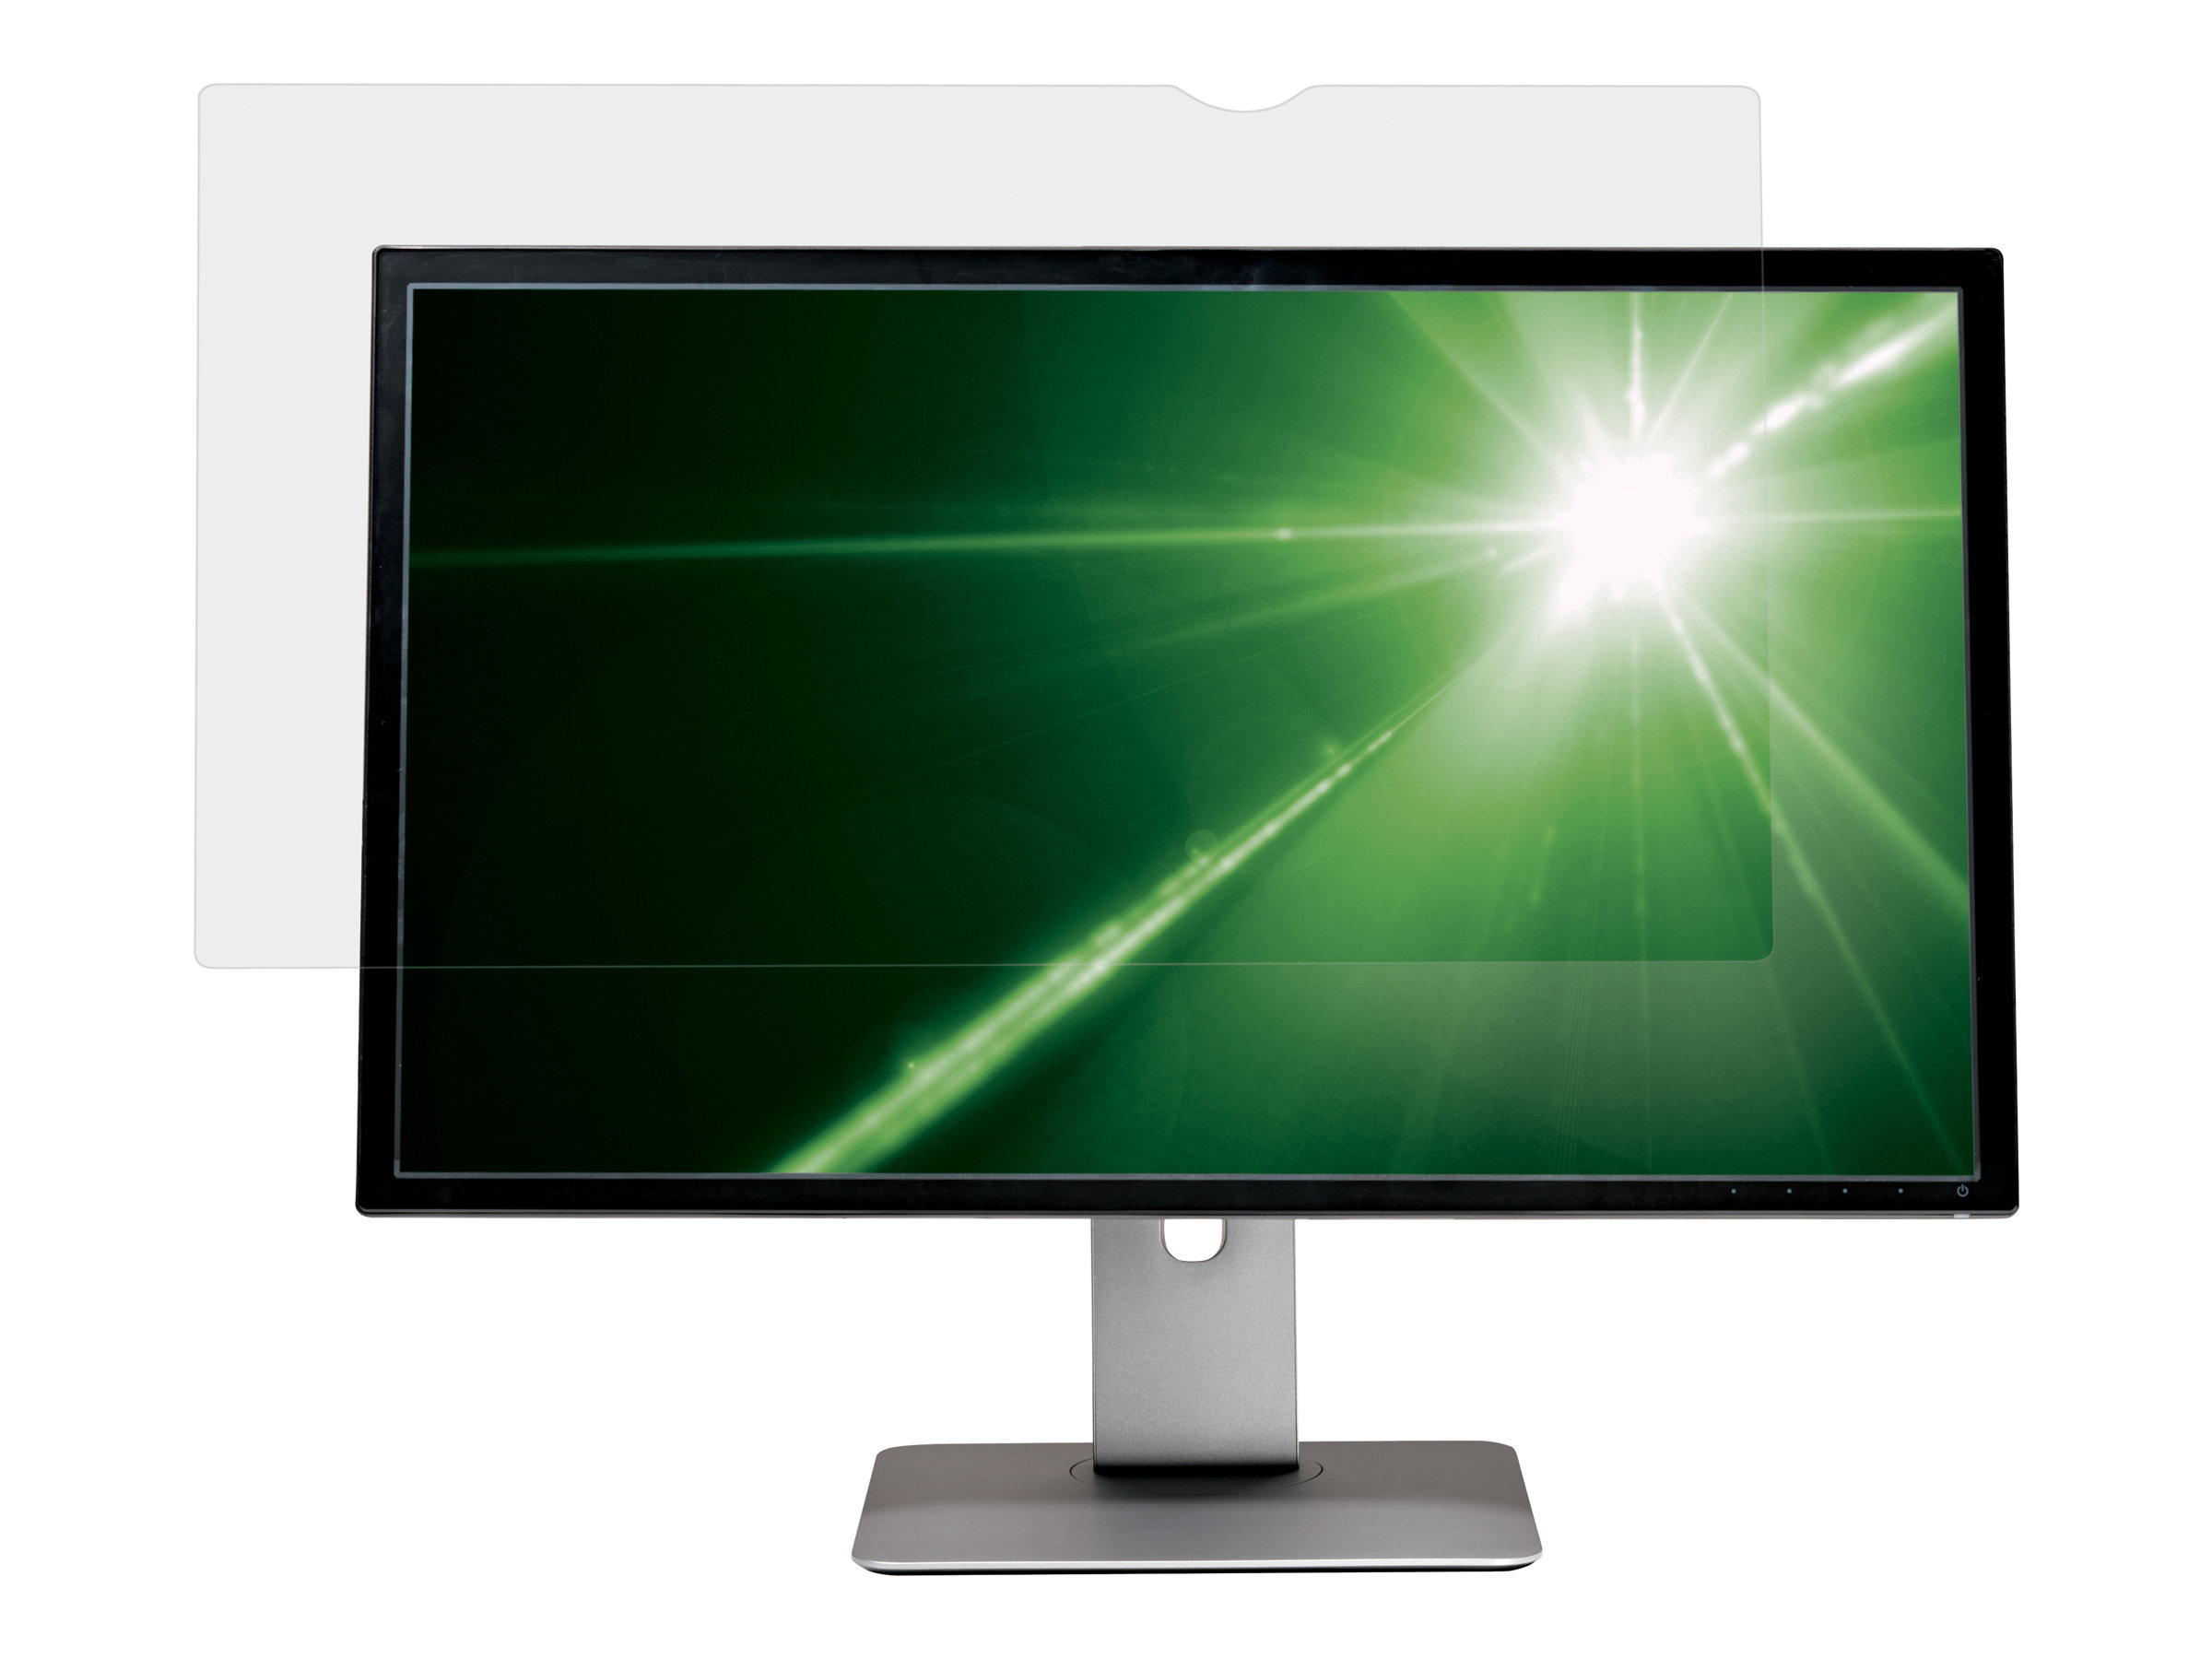 3M Blendschutzfilter für 23" Breitbild-Monitor - Filter für Bildschirmanzeige - 58.4 cm (LCD)